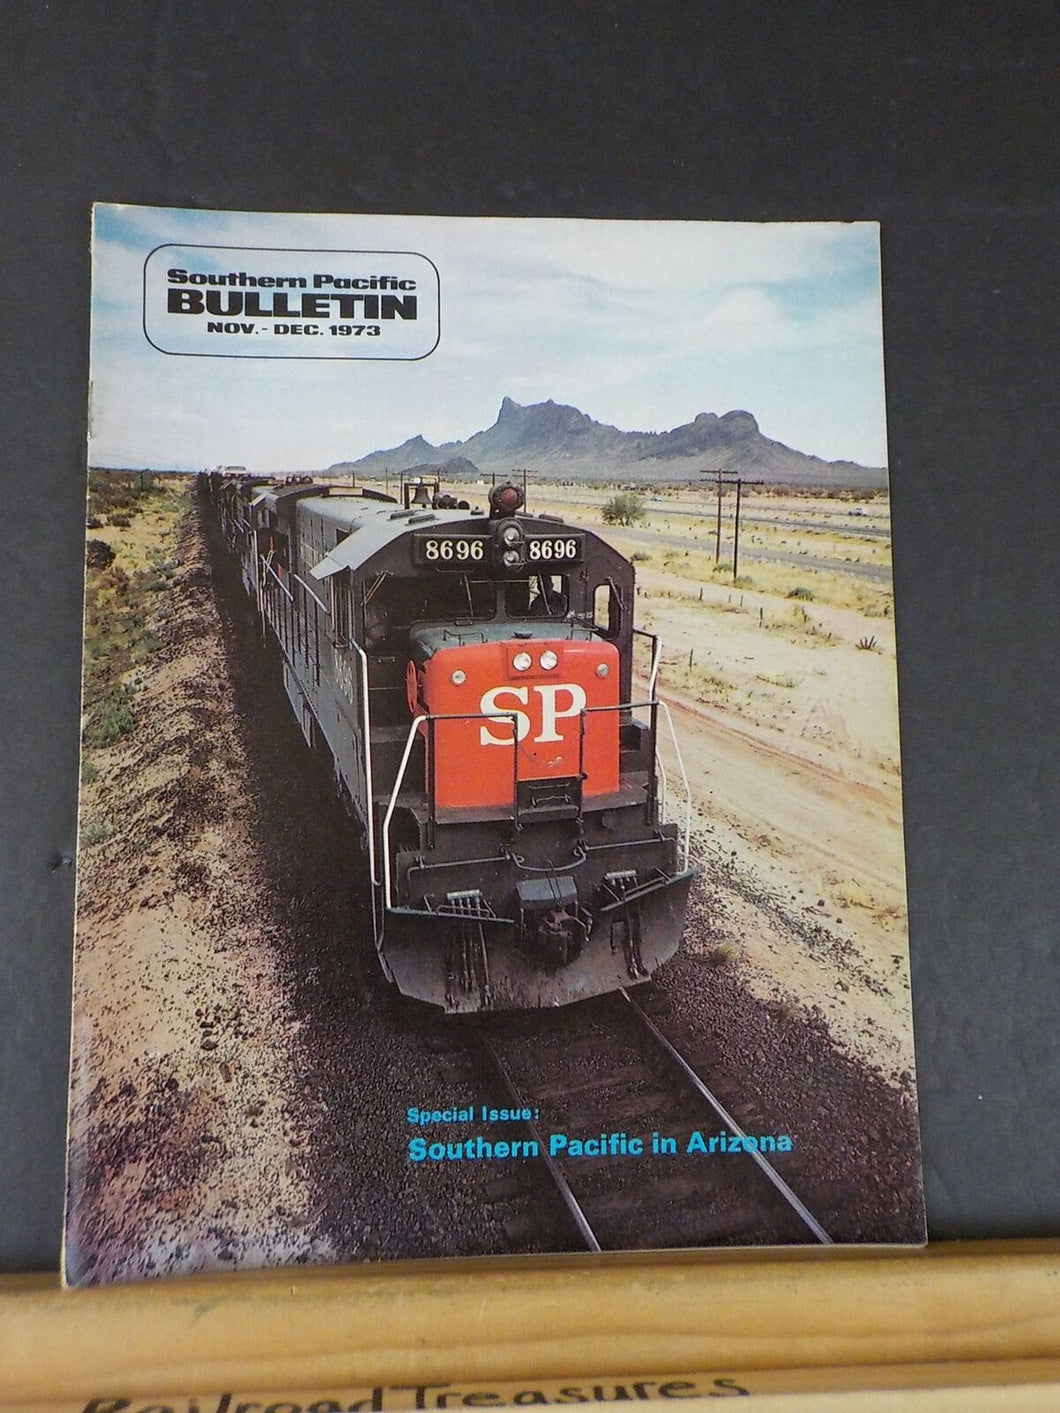 Southern Pacific Bulletin 1973 November - December Vol57 #9 SP in Arizona